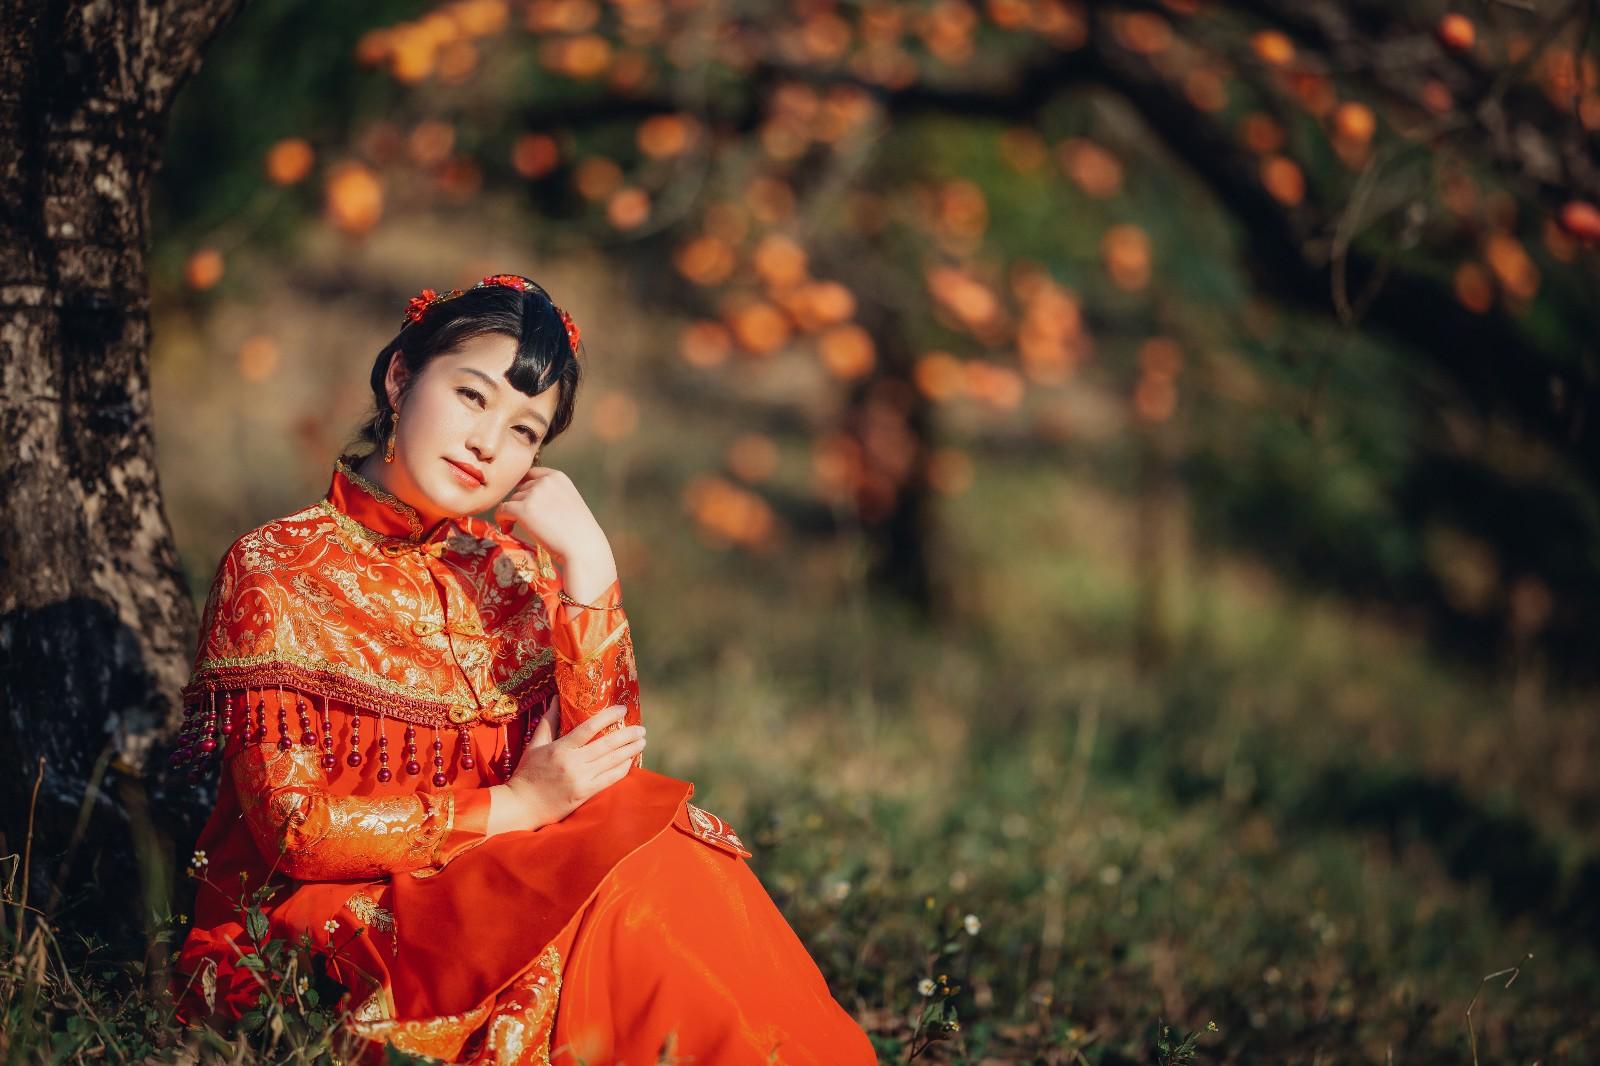 橘林树下休息的美女红顶级少妇MM1311图片